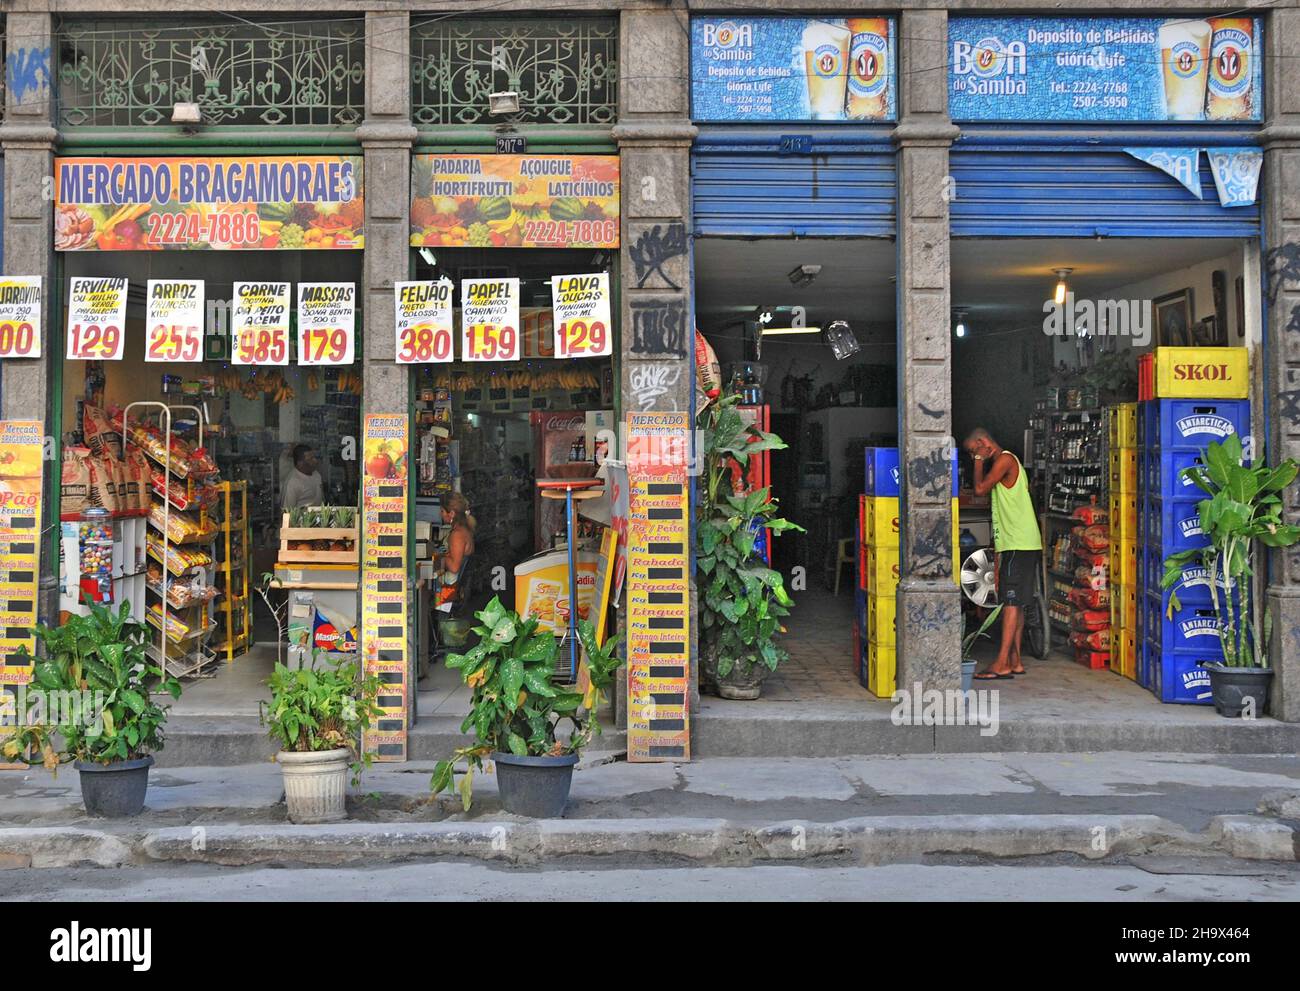 shop, Lapa, Rio de Janeiro, Brazil Stock Photo